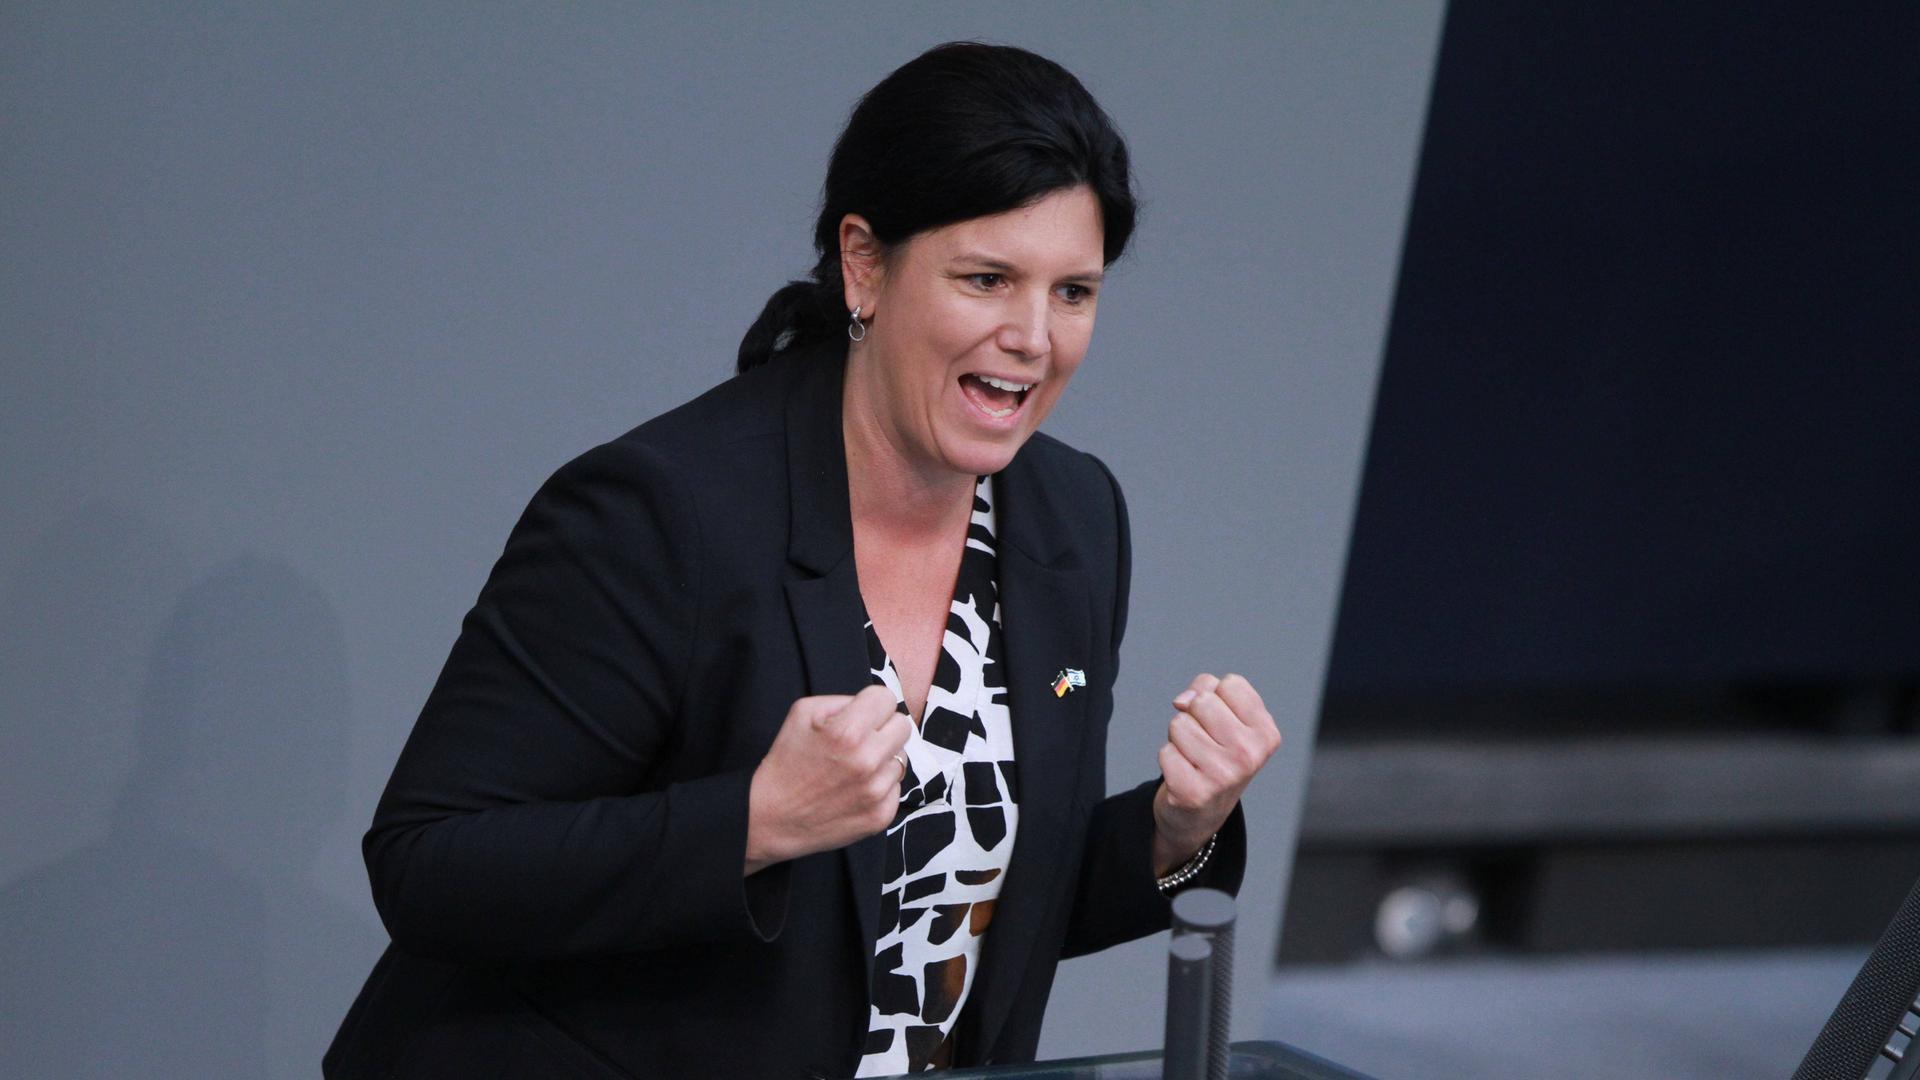 Die FDP-Politikerin Carina Konrad steht an einem Rednerpult im Bundestag mit geballten Händen